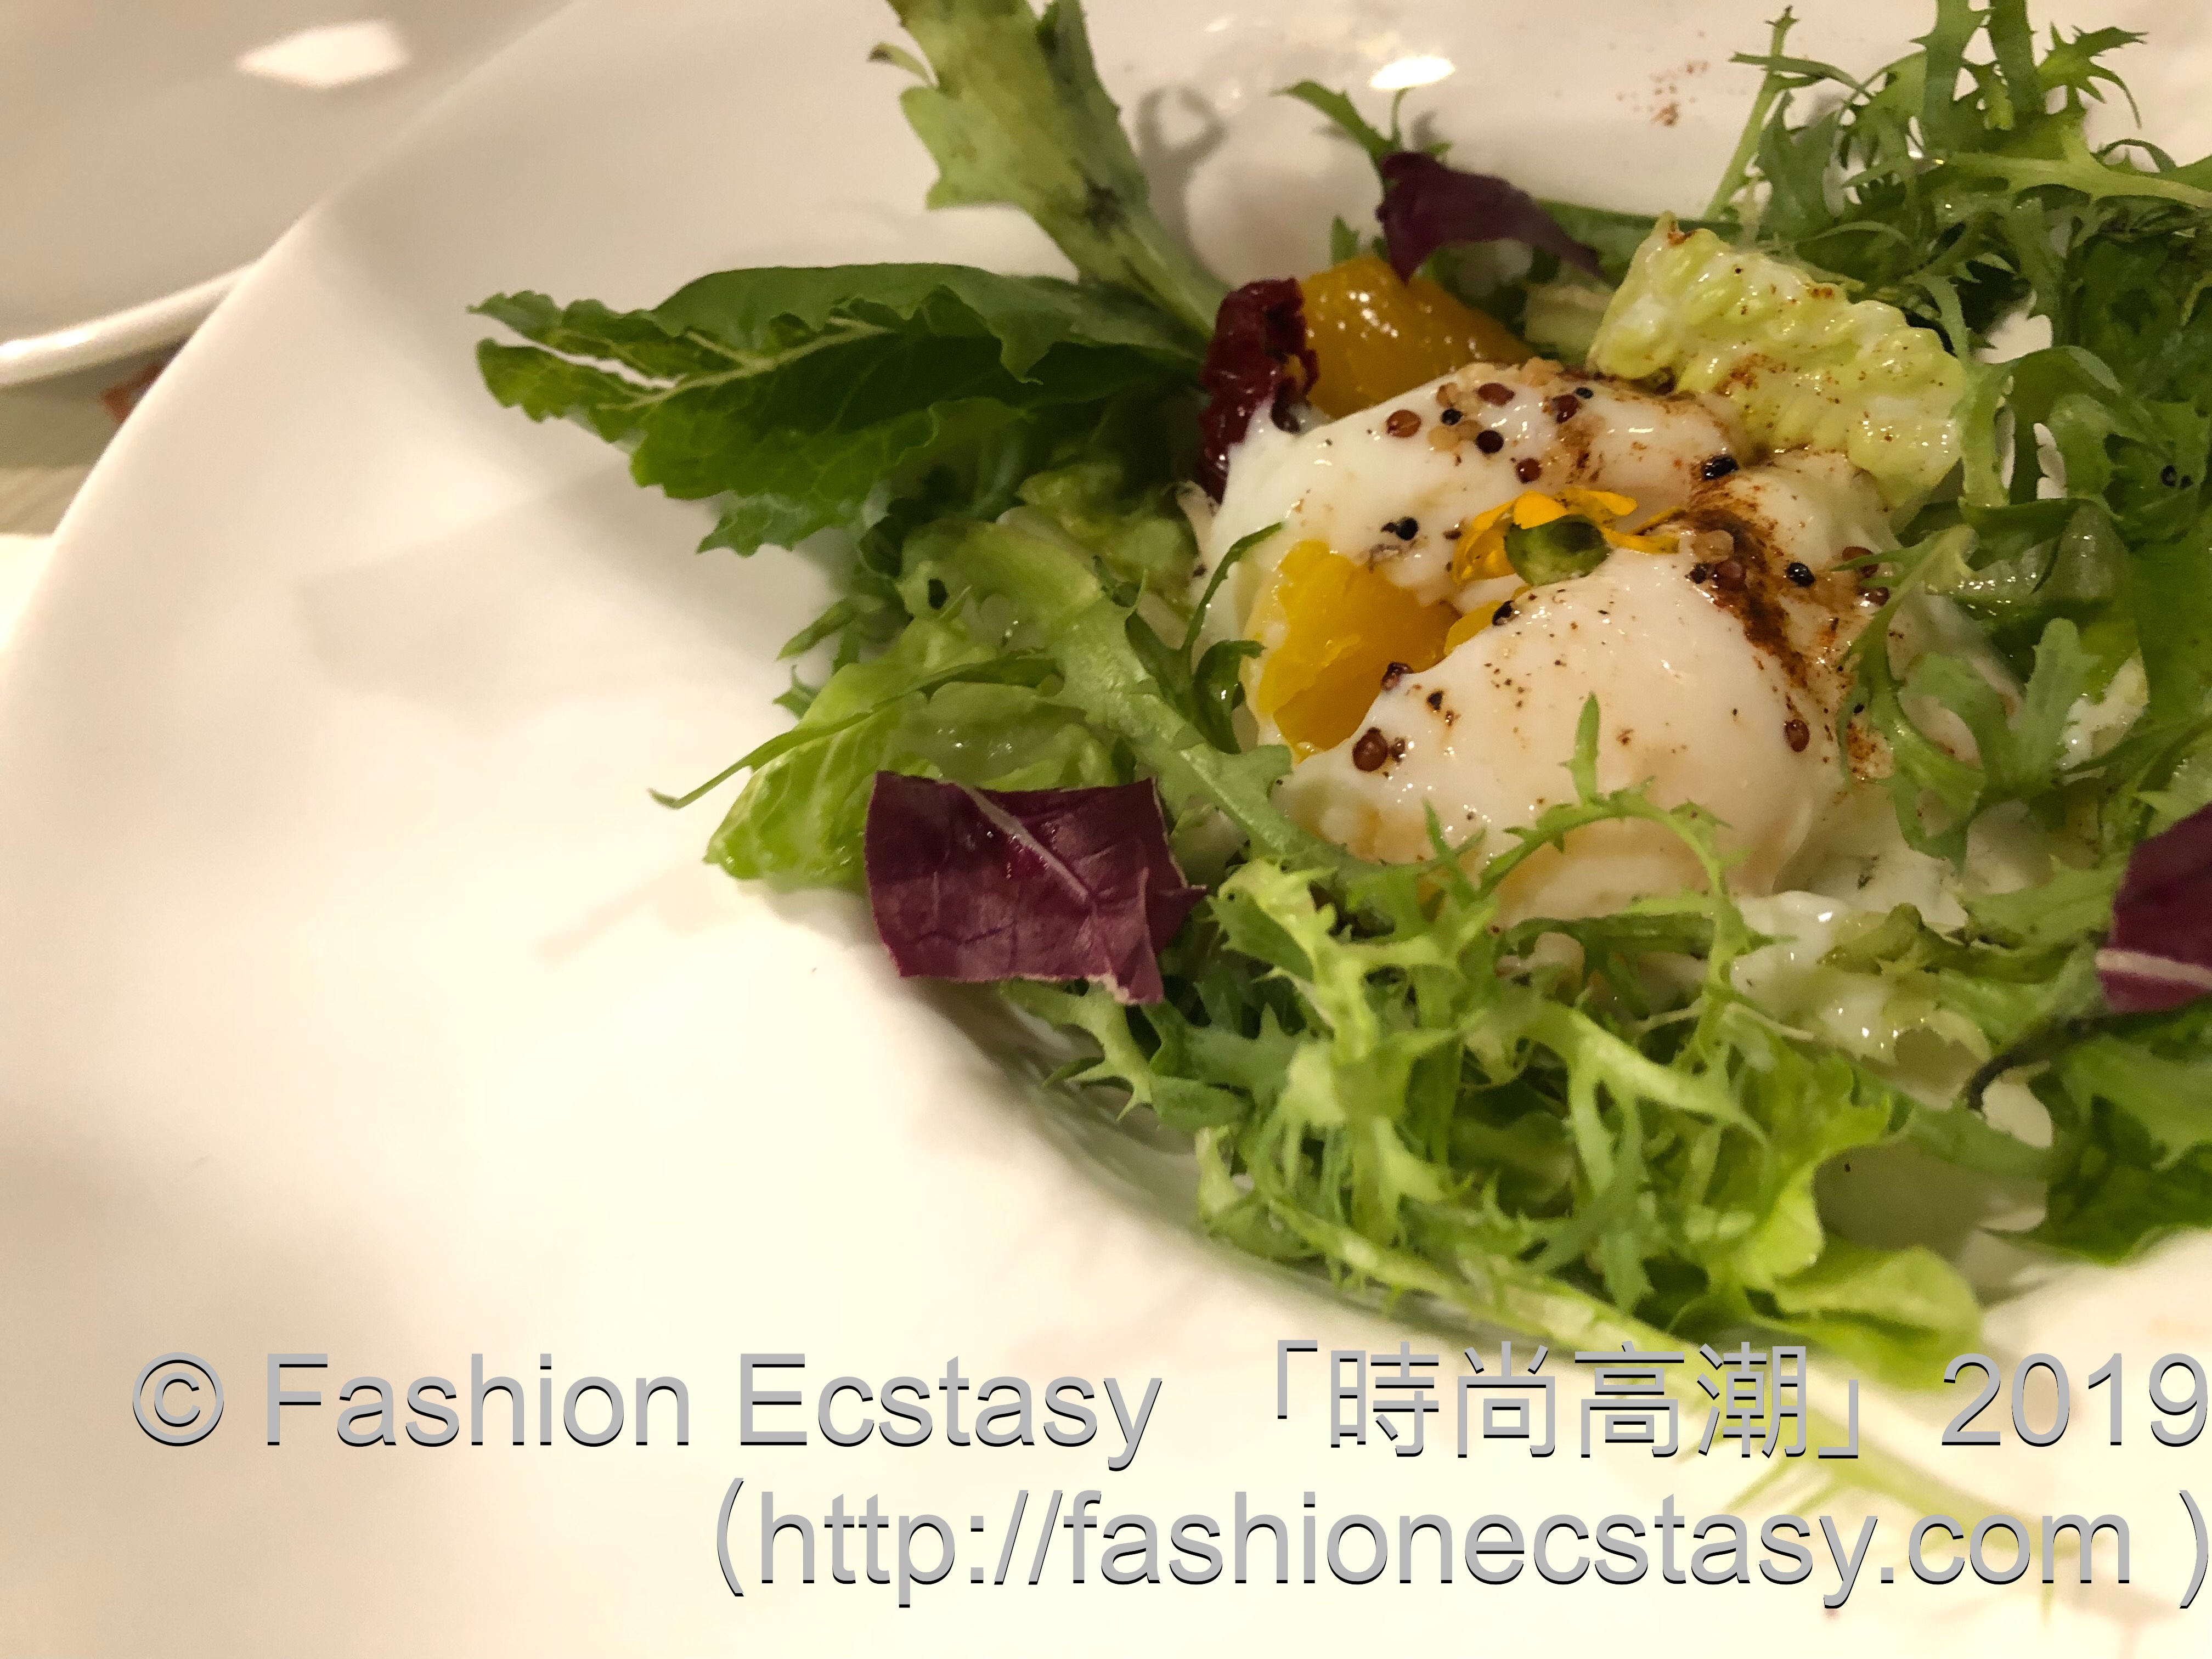 「溫泉蛋芒果油醋沙拉」/salad: “JP Soft boiled egg mango vinegar salad”: